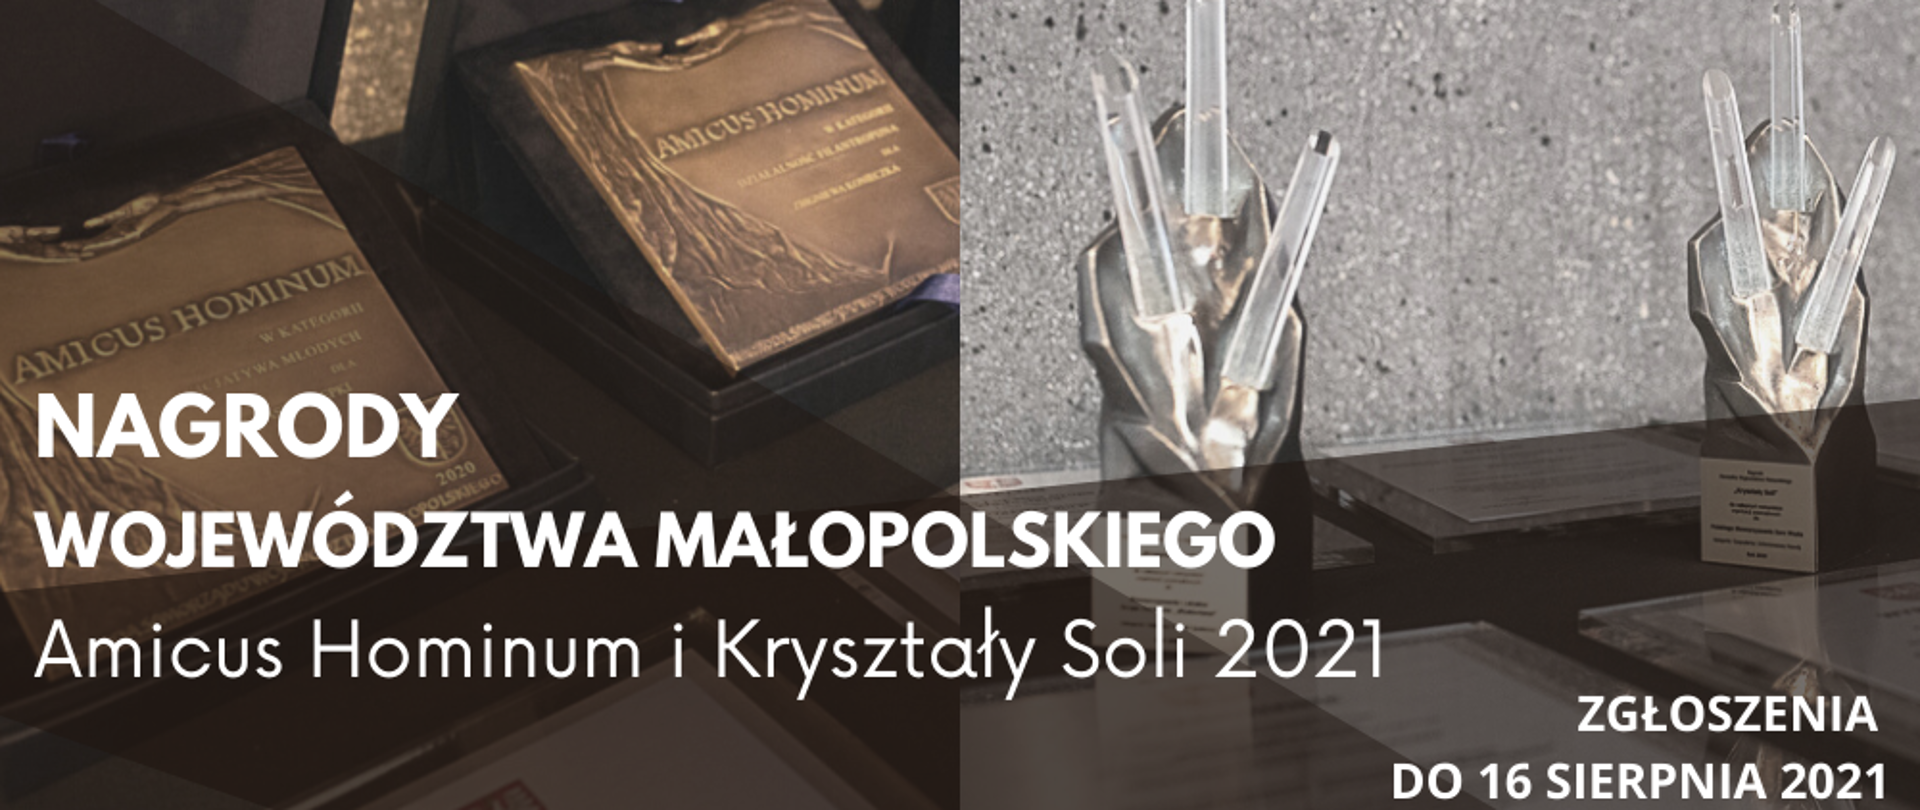 Na zdjęciu nagrody, statuetki Województwa Małopolskiego 